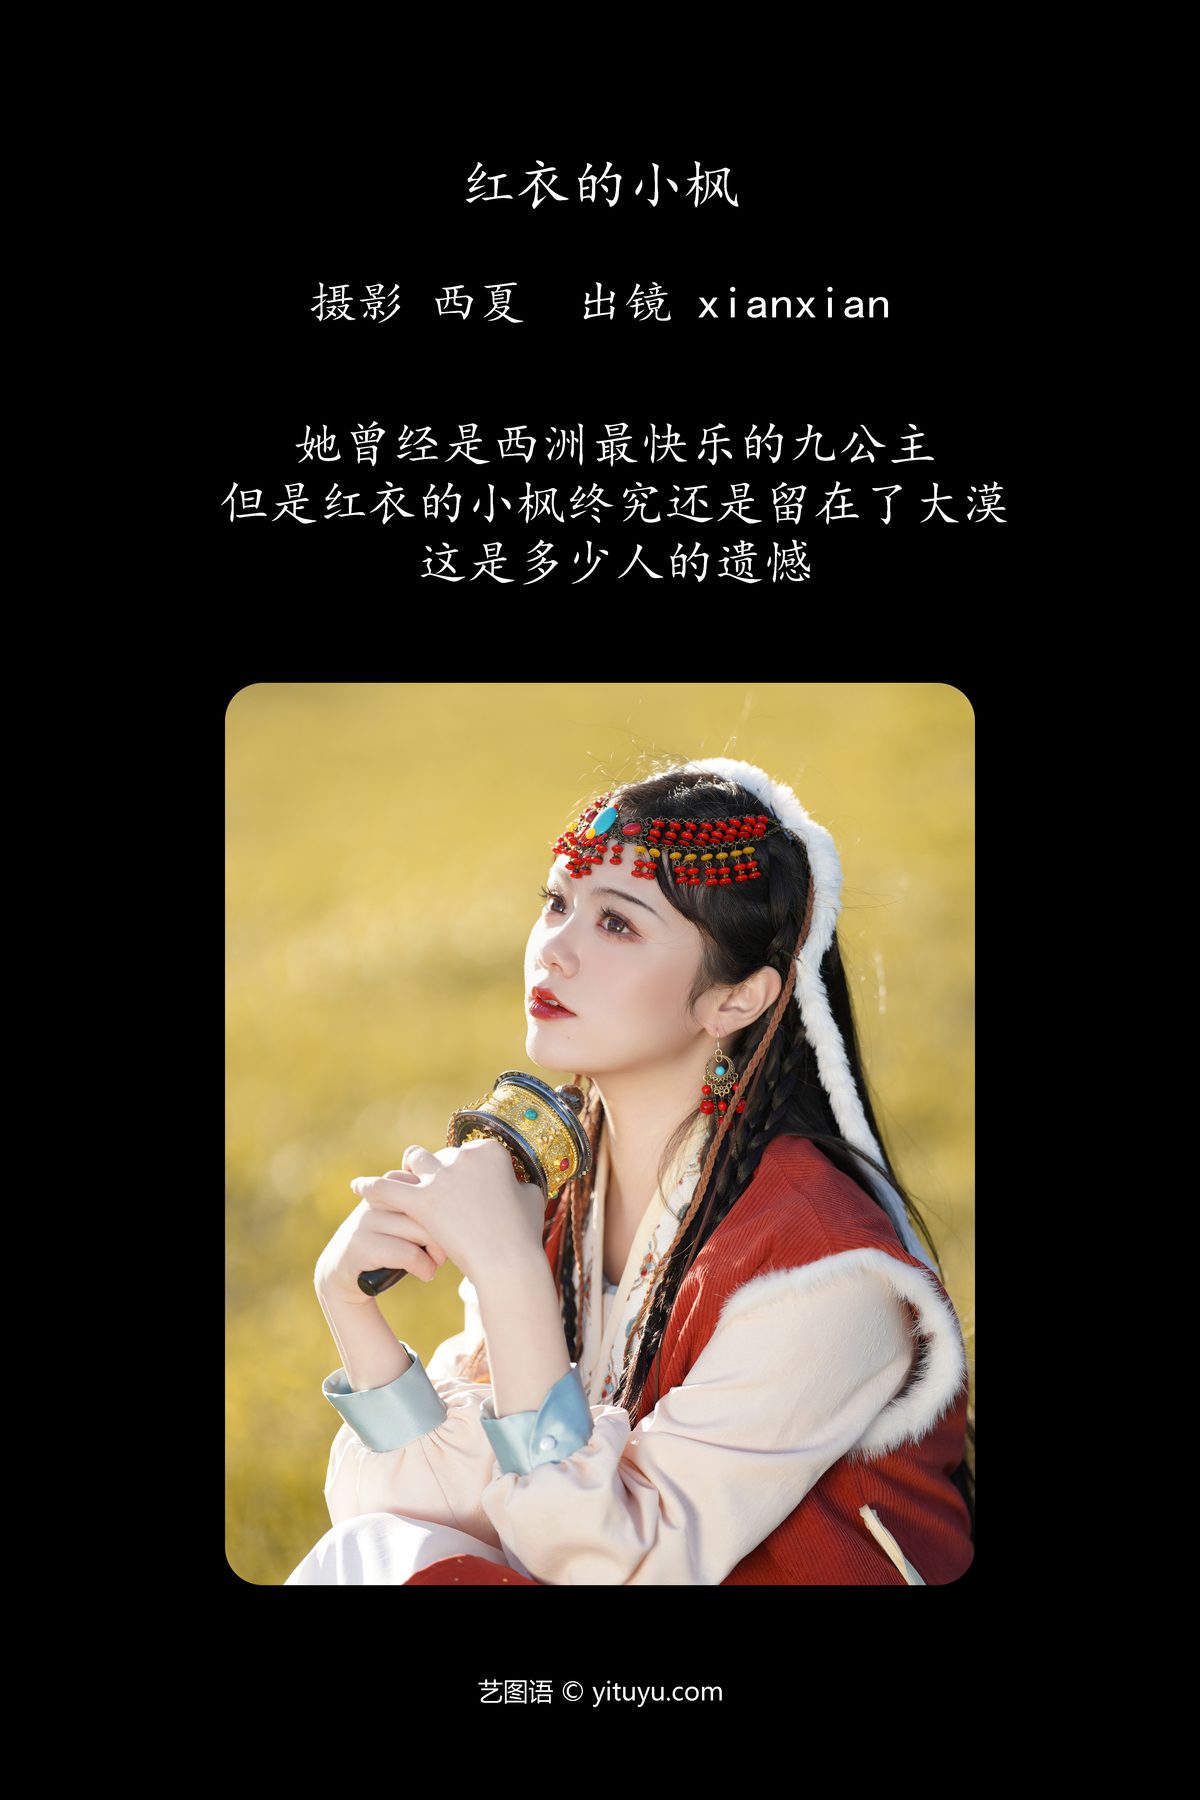 YiTuYu艺图语 Vol 6017 Xian Xian 0002 1886144280.jpg